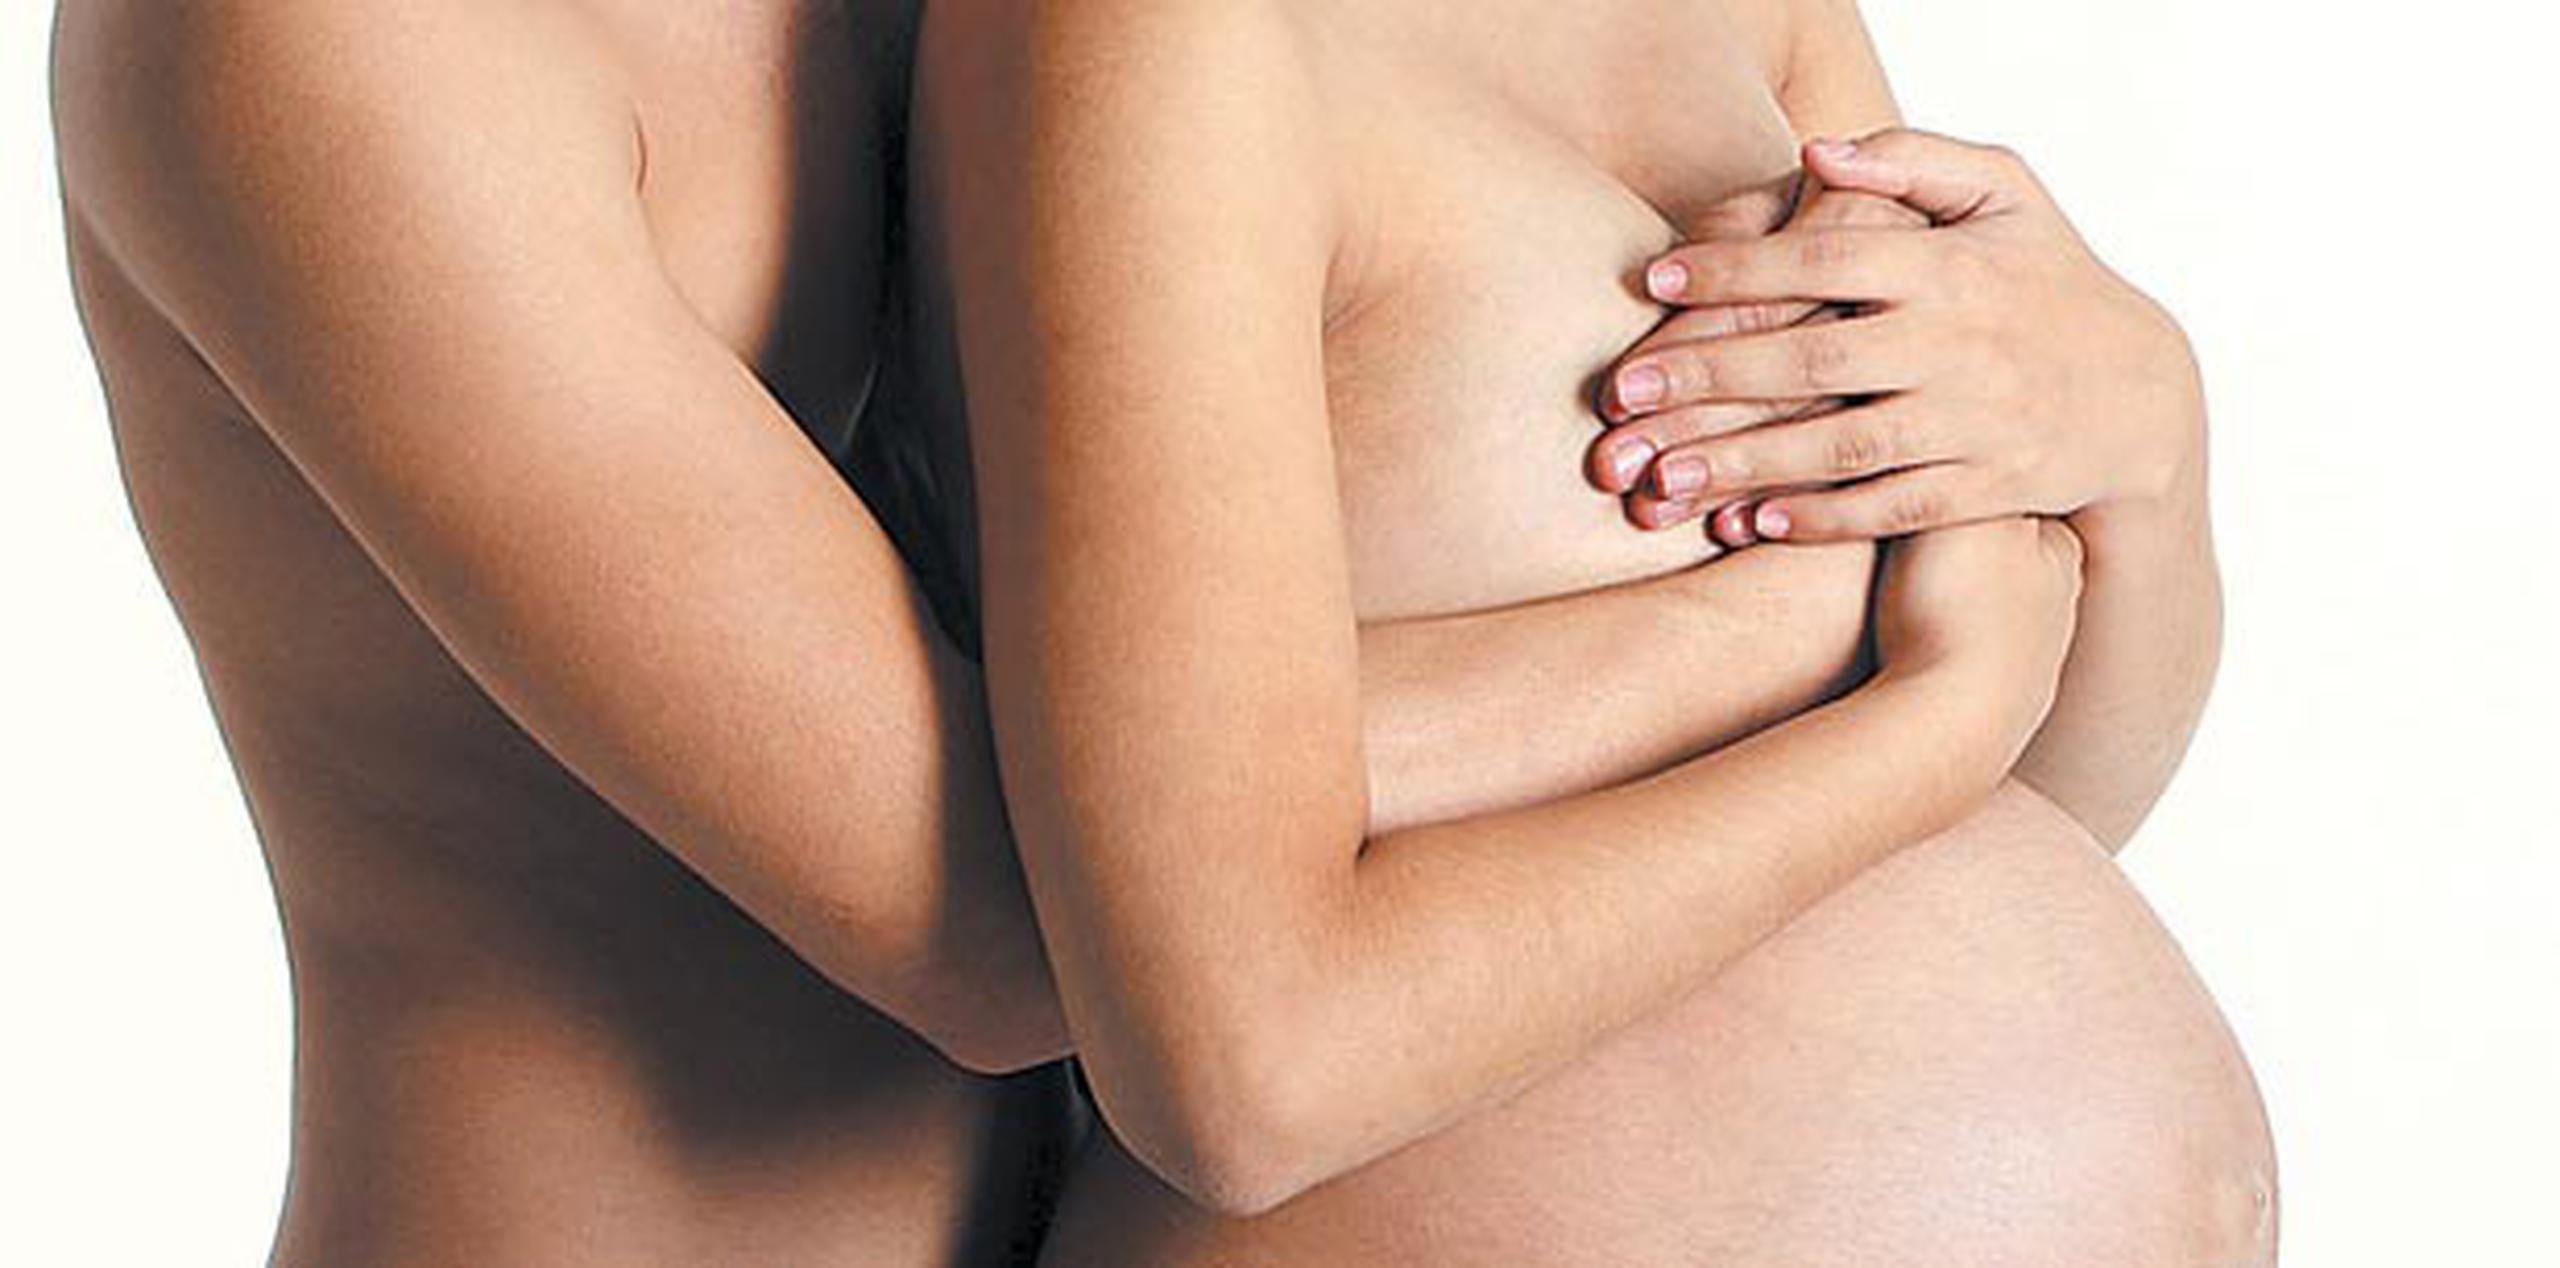 Dependiendo del caso, los cambios hormonales o la falta de preocupación a quedar embarazada pueden provocar que aumente el deseo sexual. (Archivo)